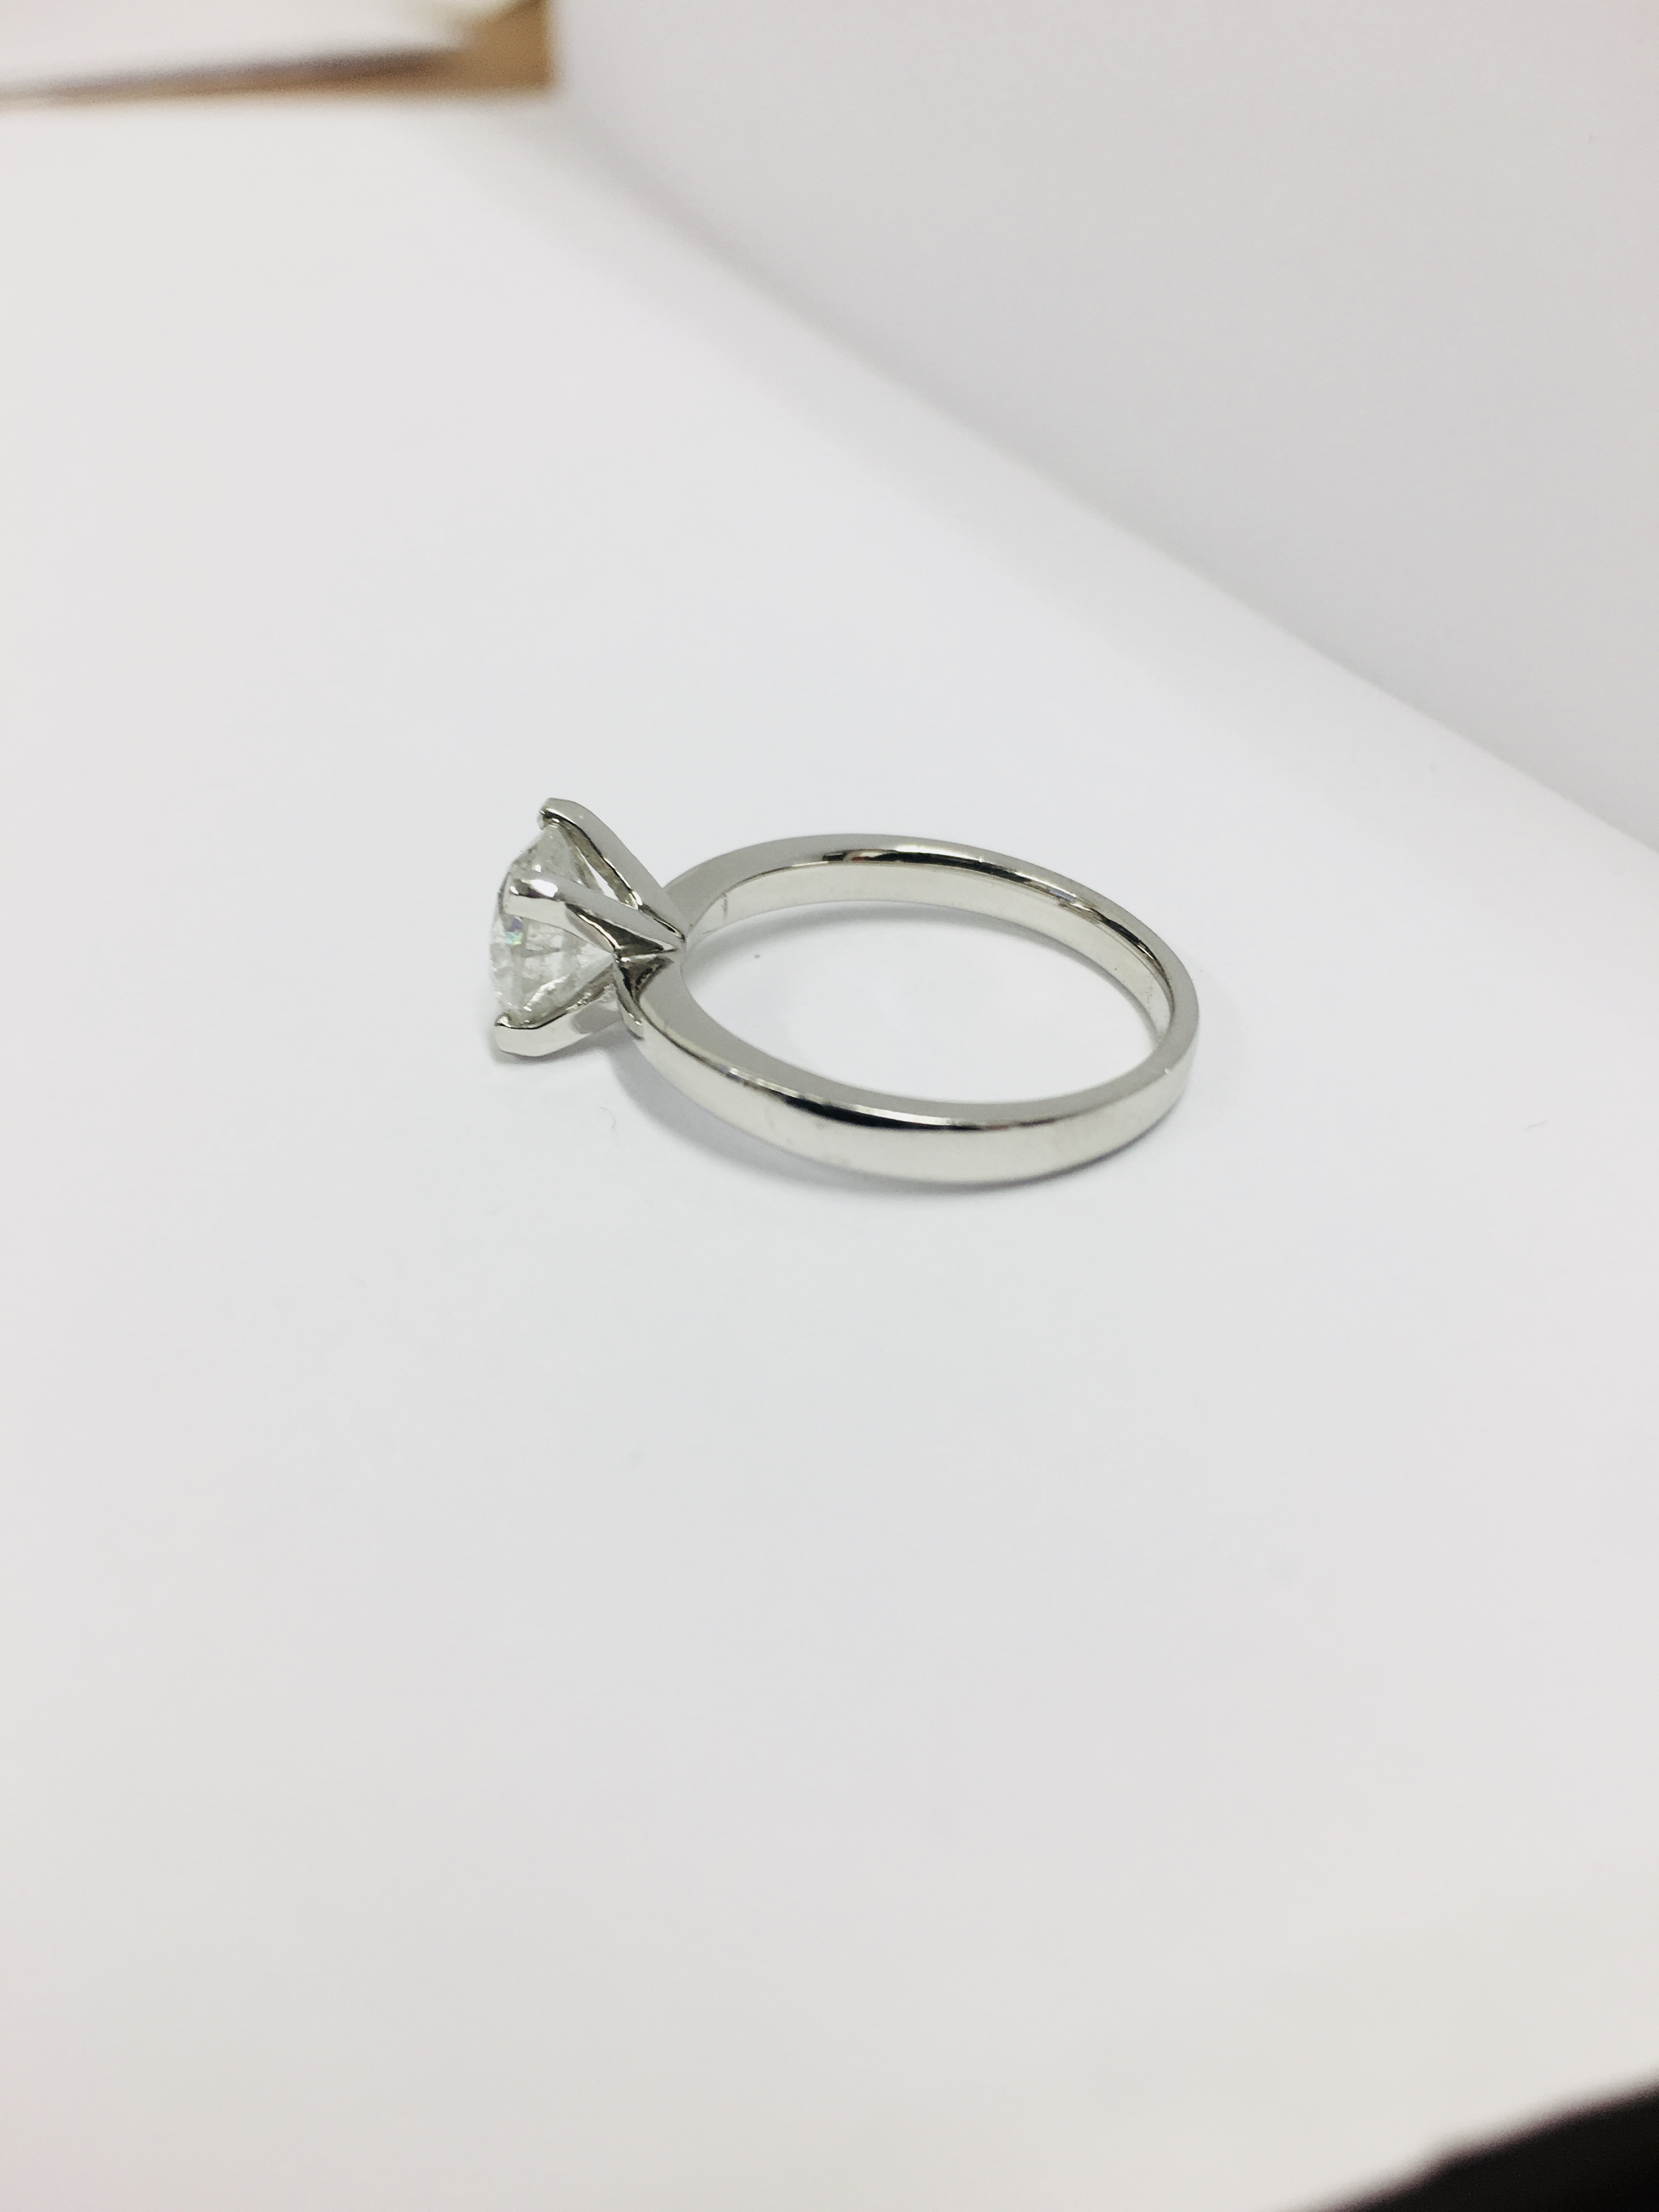 1.50ct diamond solitaire ring set in platinum - Image 9 of 35